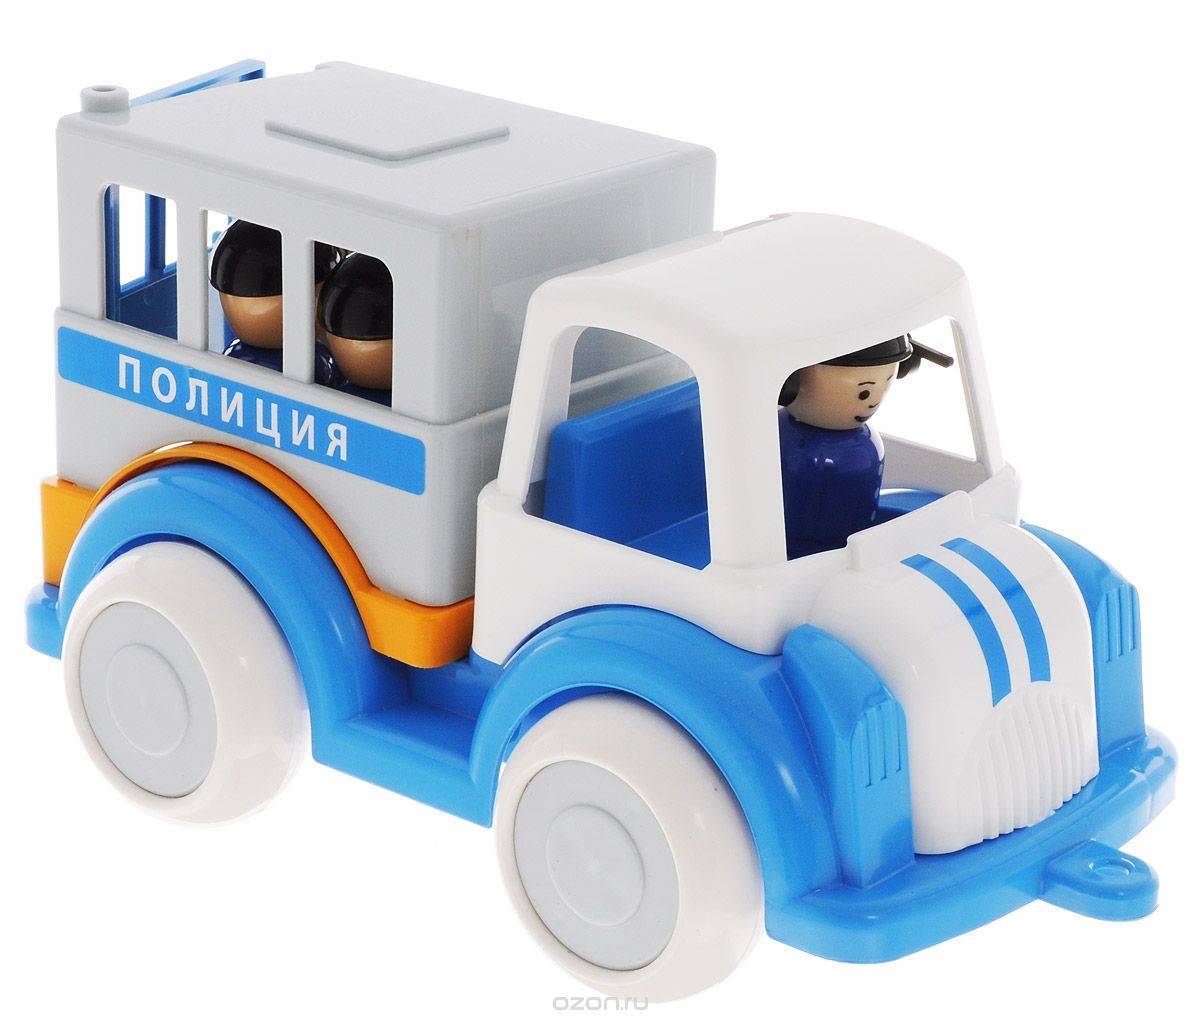 Машинка Полиция "Детский сад" 28 см, пластмассовая игрушка Форма С-161-Ф